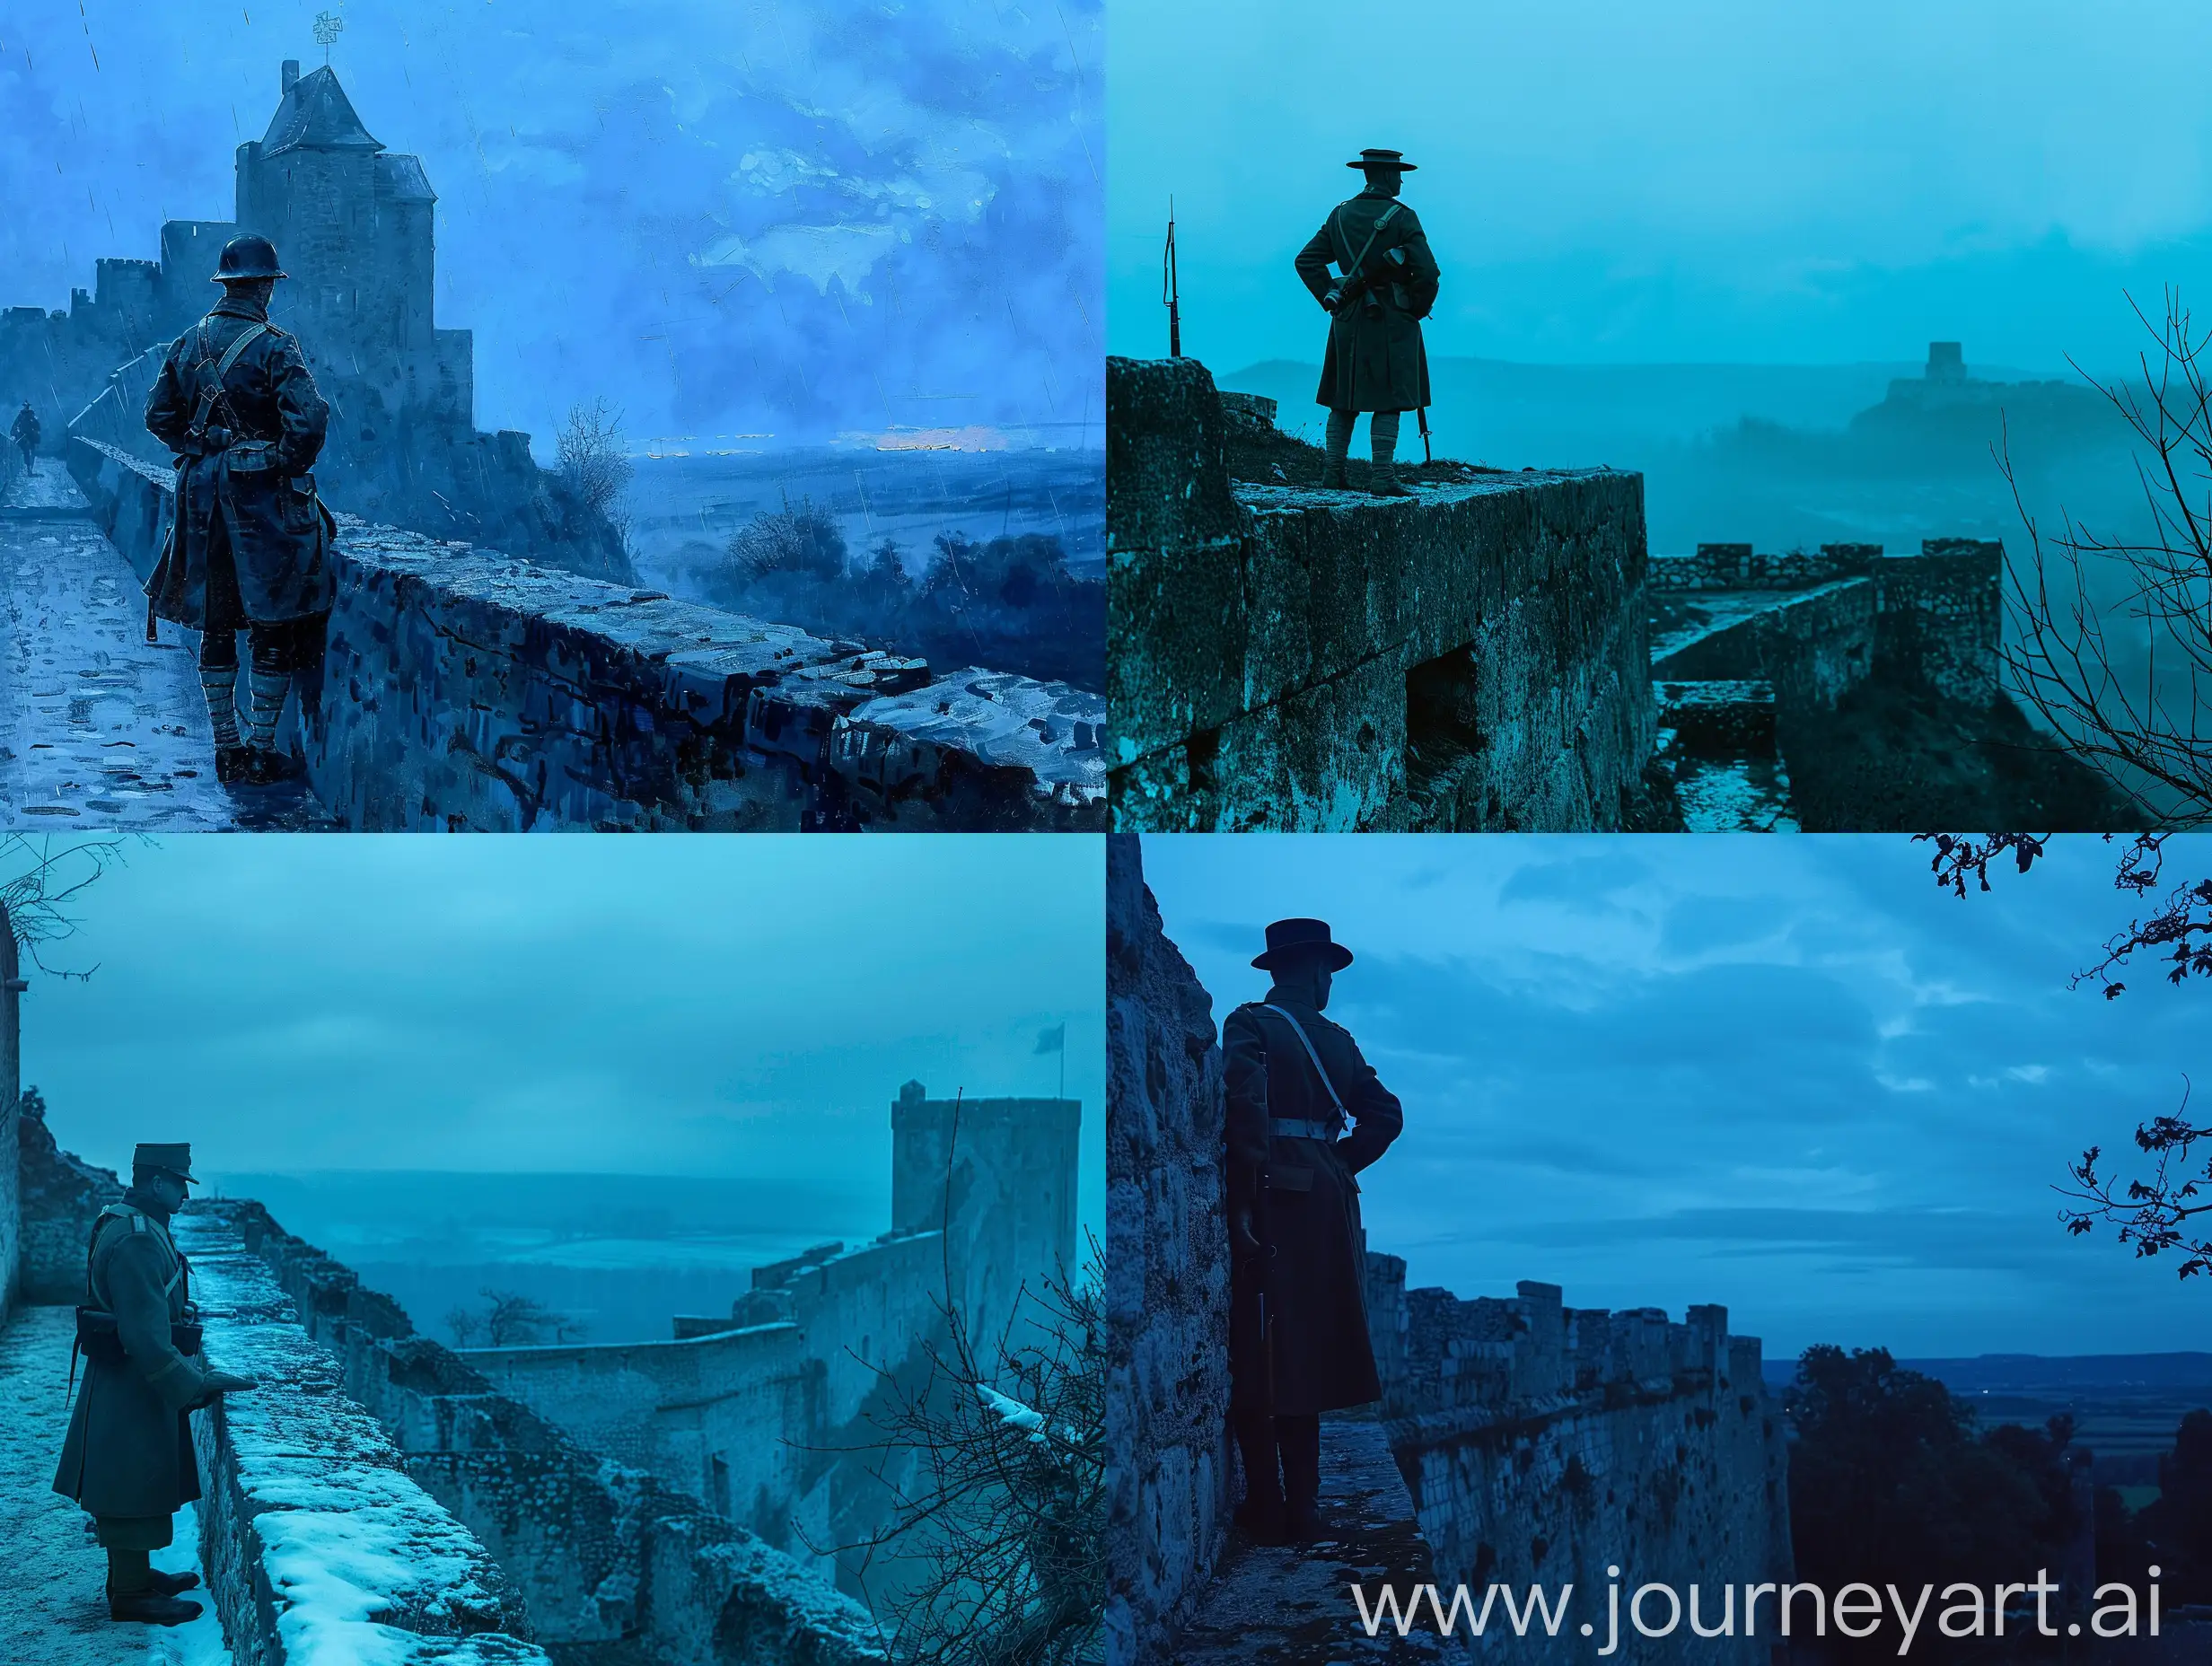 Сцена вечера со стены замка: Солдат первой мировой, стоит на стене и смотрит в даль. Подчеркивая холодные синие тона